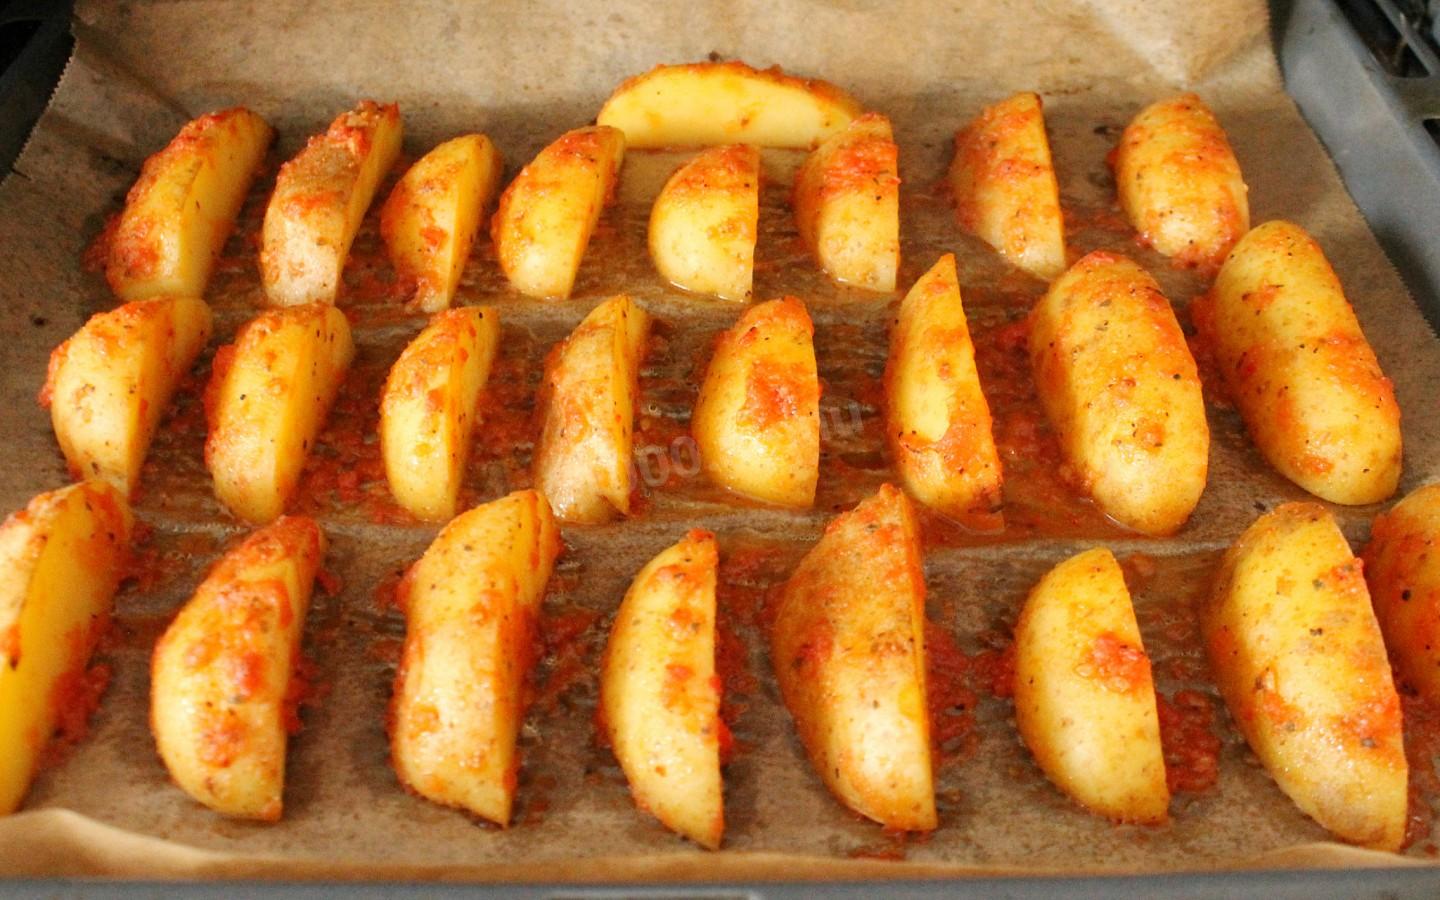 Сколько по времени запекается картошка в духовке. Картошка молодая в духовке в кожуре. Картошка в кожуре запеченная в духовке. Запечённый картофель половинками в кожуре духовке. Маленькая картошка в духовке с кожурой.